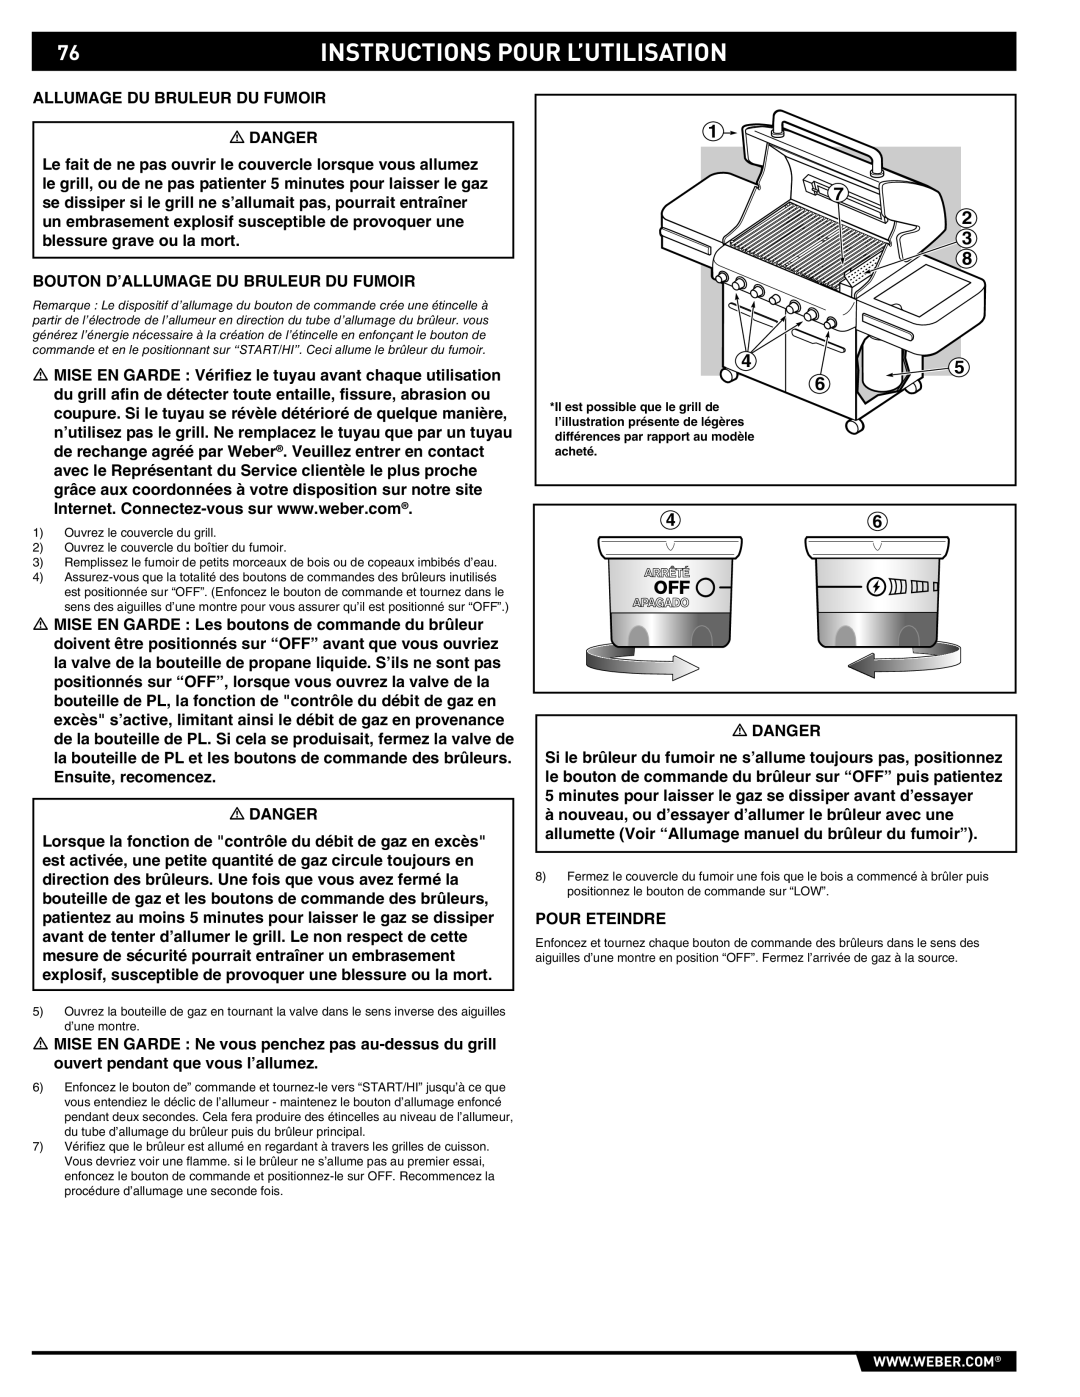 Summit 89190 manual Instructions Pour L’Utilisation, Ouvrez le couvercle du grill 